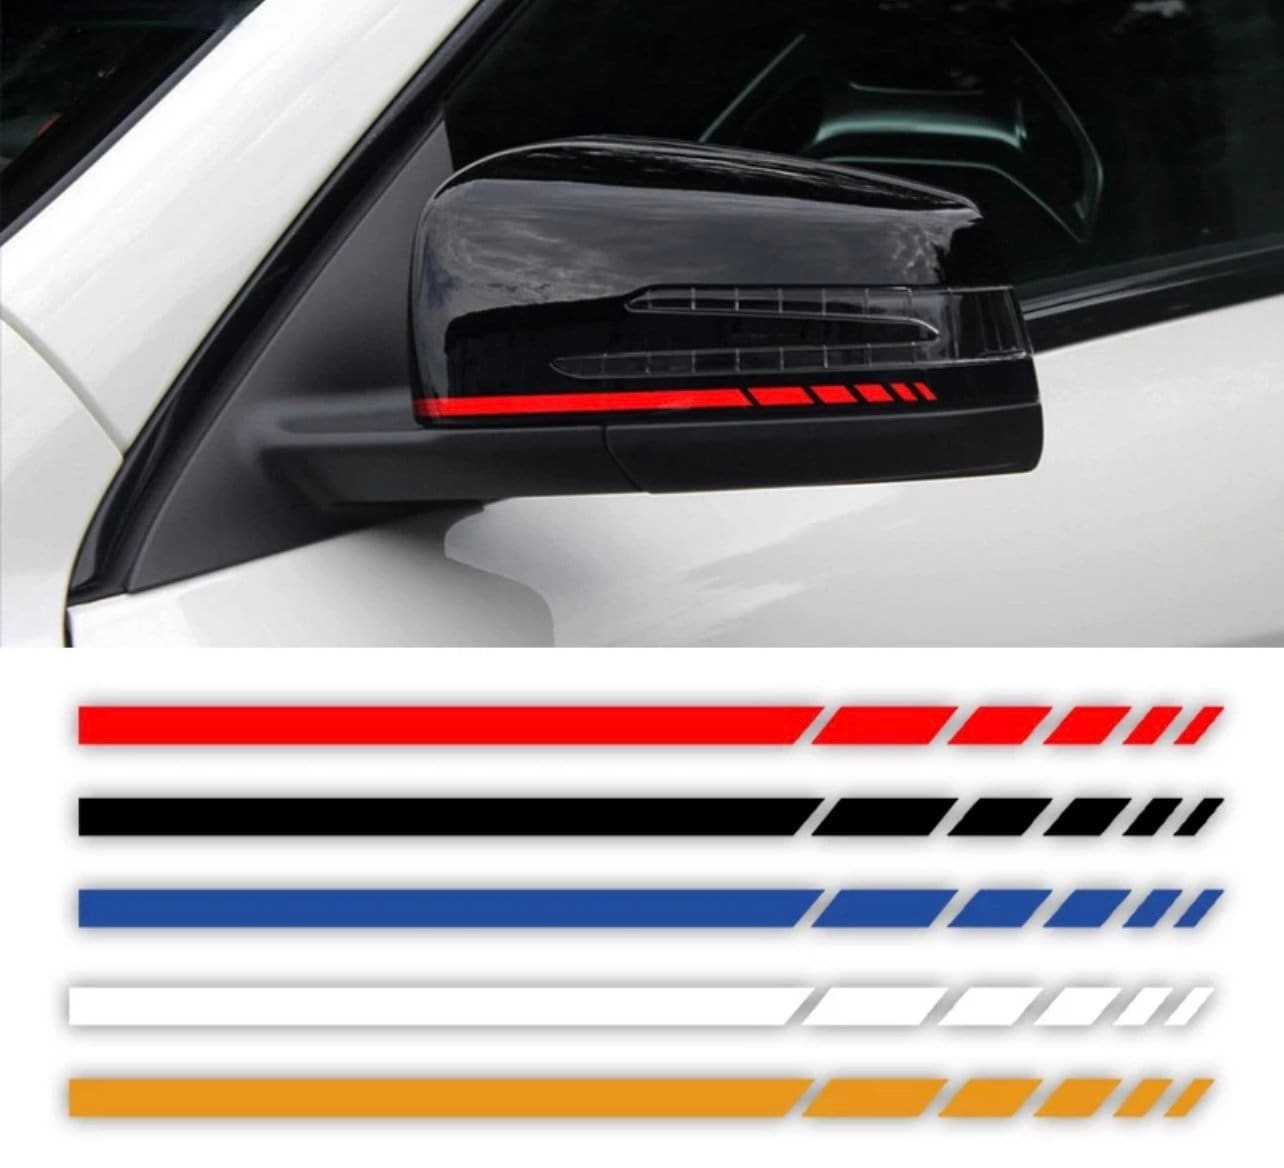 6X Autoaufkleber, Streifen-Seitenaufkleber Vinyl-Aufkleber Autoseite  Grafikaufkleber, verwendet für Auto-Dekoration